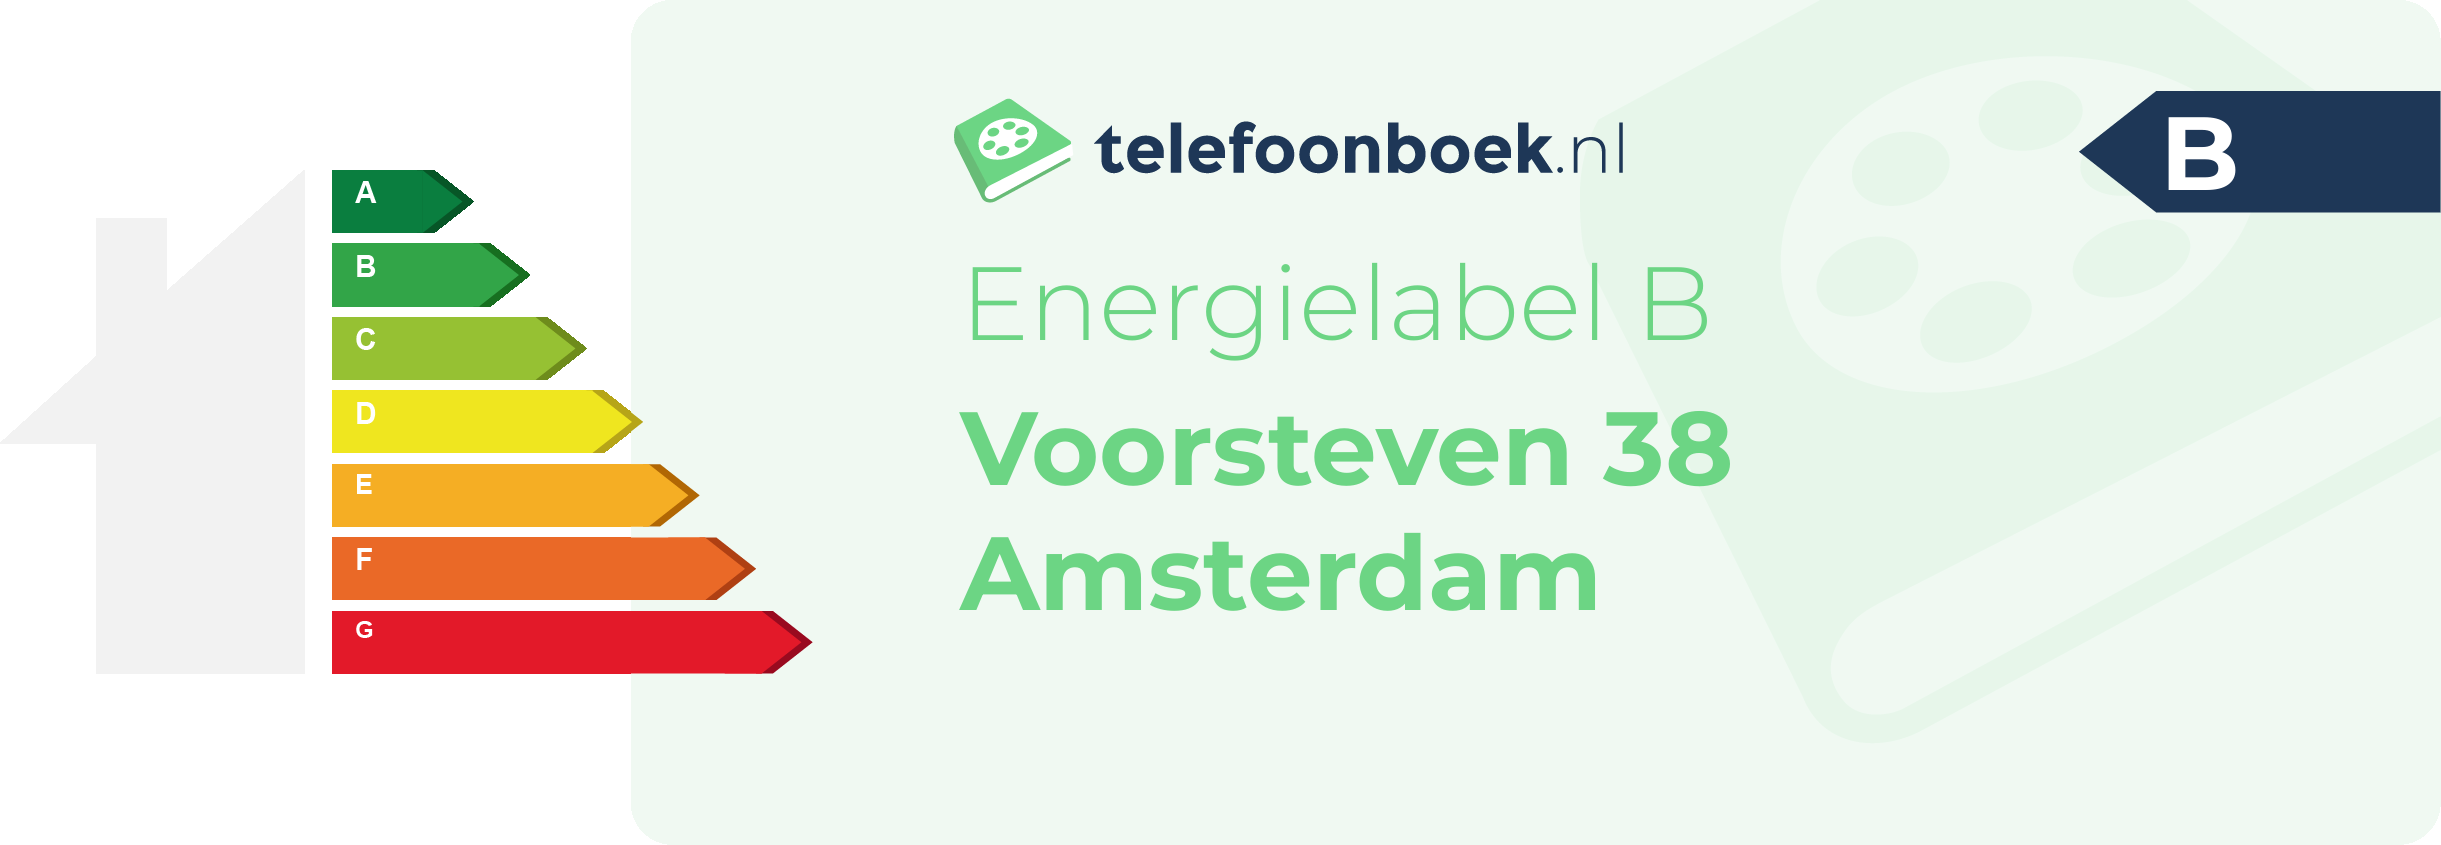 Energielabel Voorsteven 38 Amsterdam